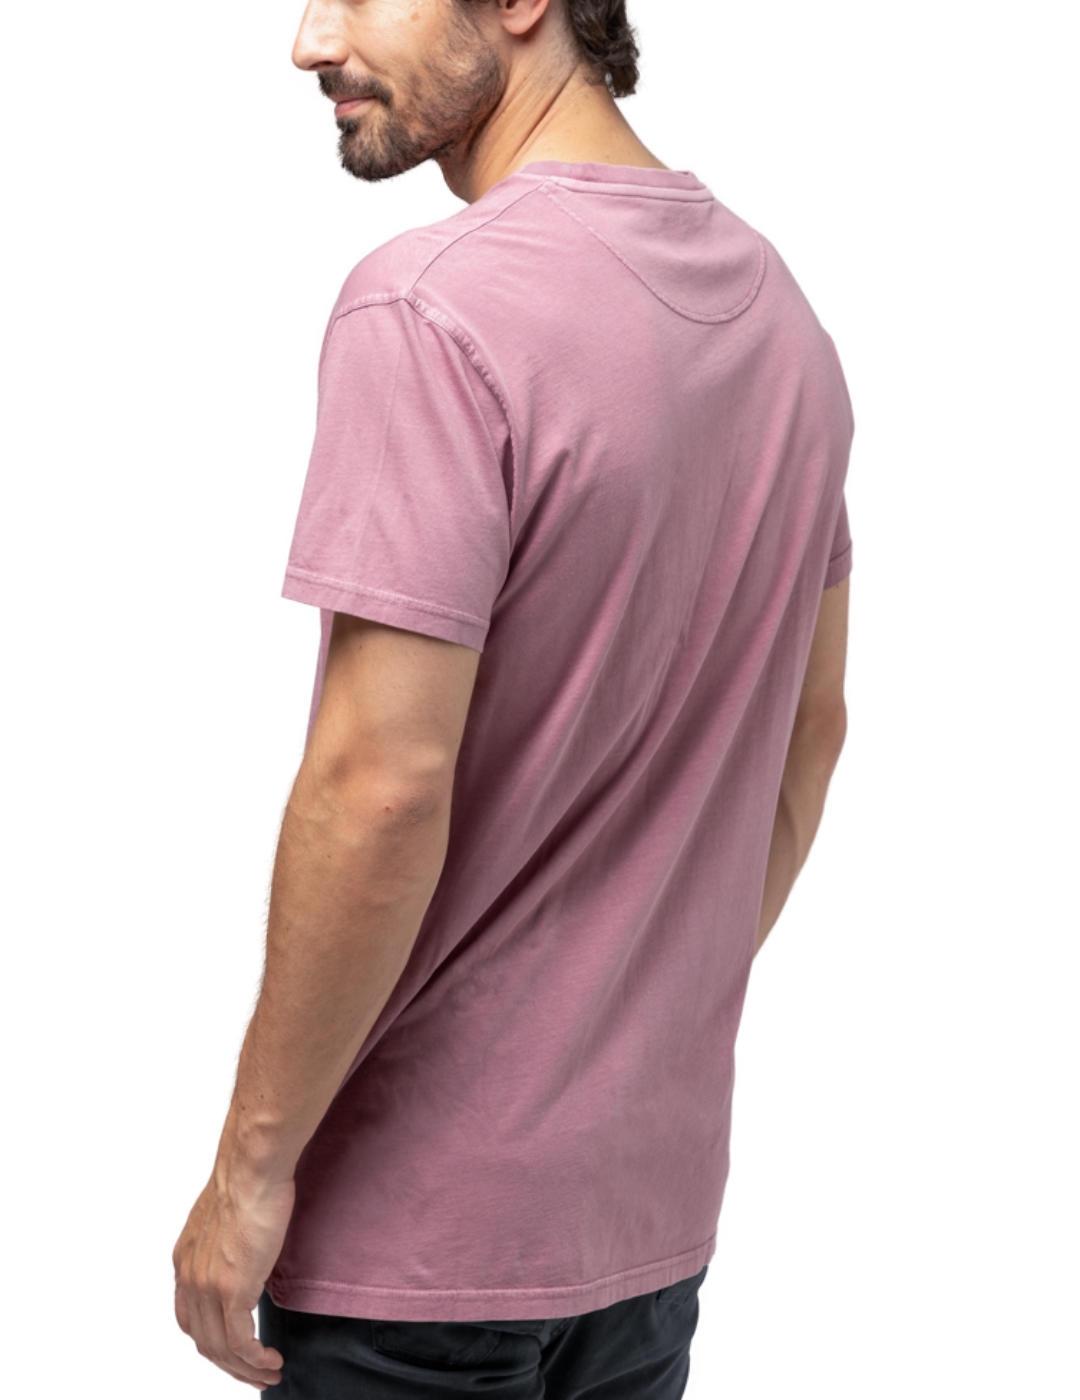 Camiseta Scotta classic rosa para hombre -b